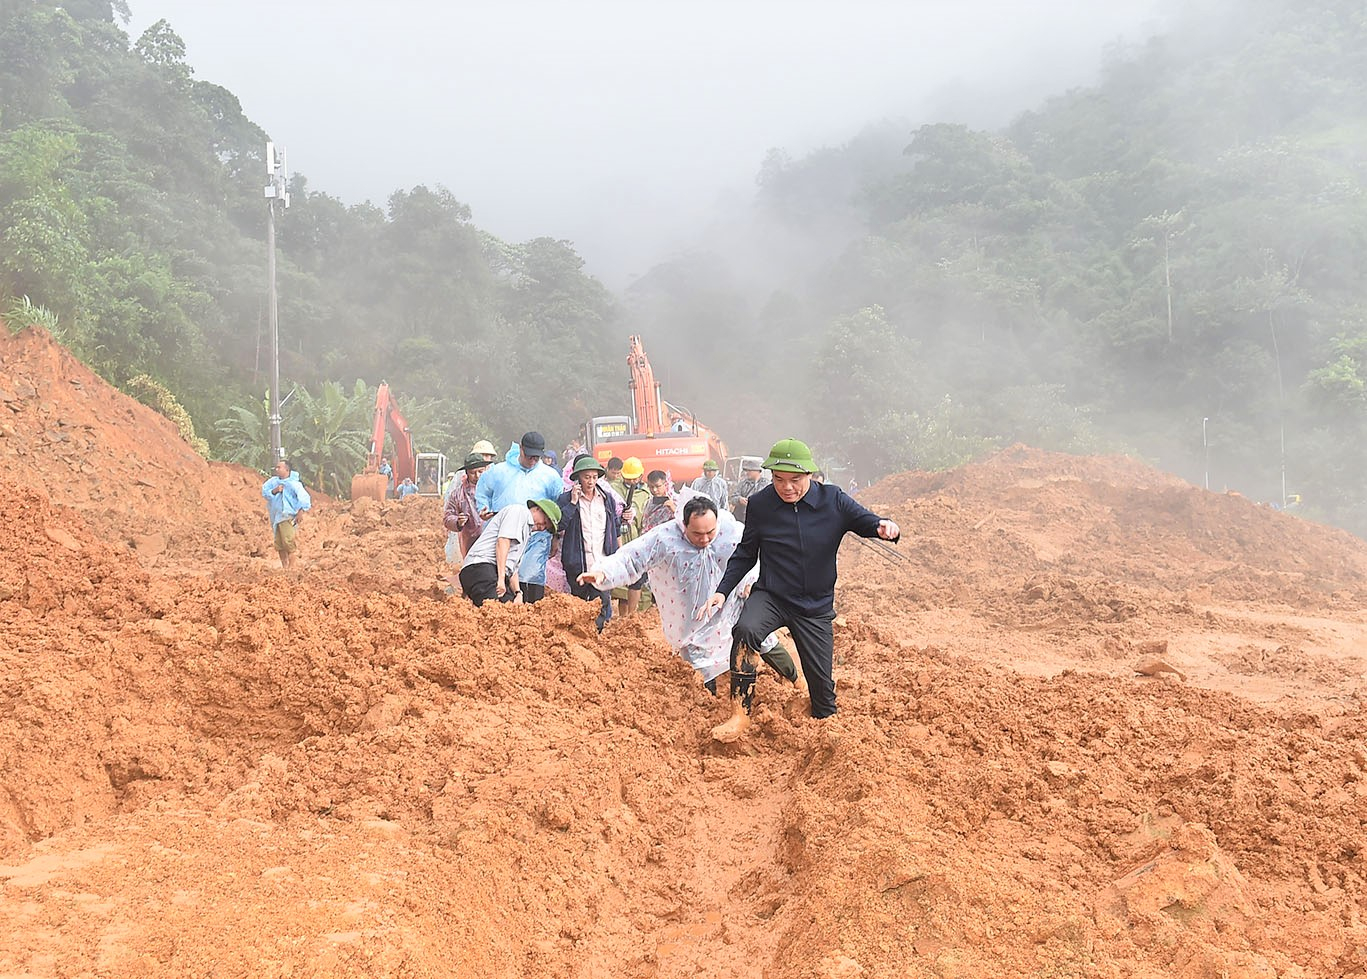 Đoàn công tác của Chính phủ do Phó Thủ tướng Chính phủ Trần Lưu Quang làm trưởng đoàn kiểm tra và chỉ đạo công tác ứng phó, khắc phục hậu quả do mưa lũ, sạt lở đất tại đèo Bảo Lộc, Lâm Đồng. Ảnh: VGP/ Hải Minh.